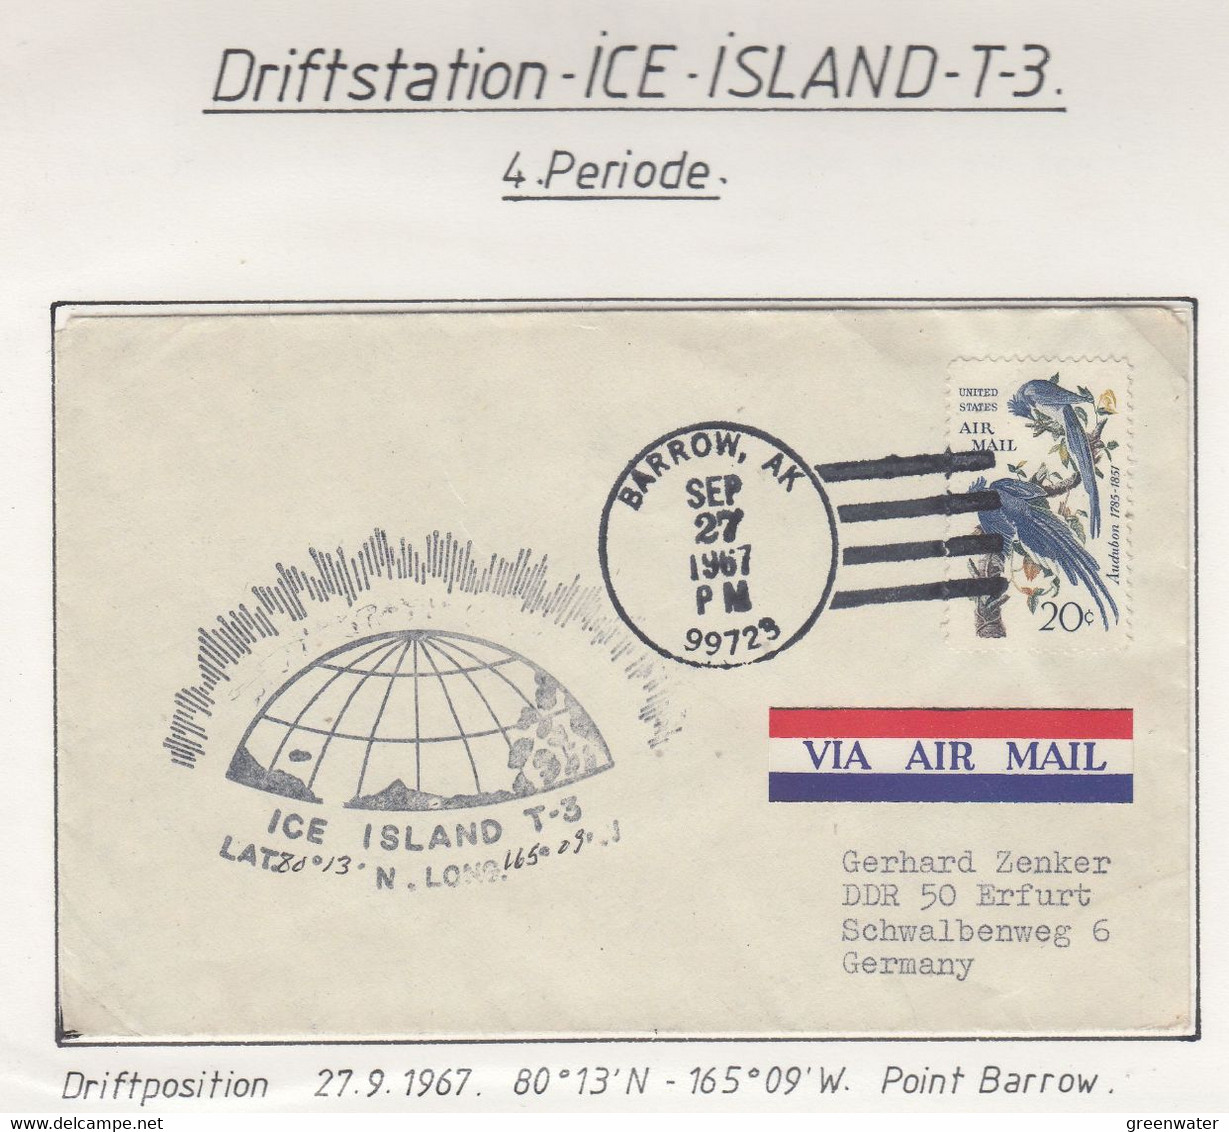 USA Driftstation ICE-ISLAND T-3 Cover Ca  Ice Island T-3 Periode 4 Ca Sep 27 1967  (DR124) - Estaciones Científicas Y Estaciones Del Ártico A La Deriva